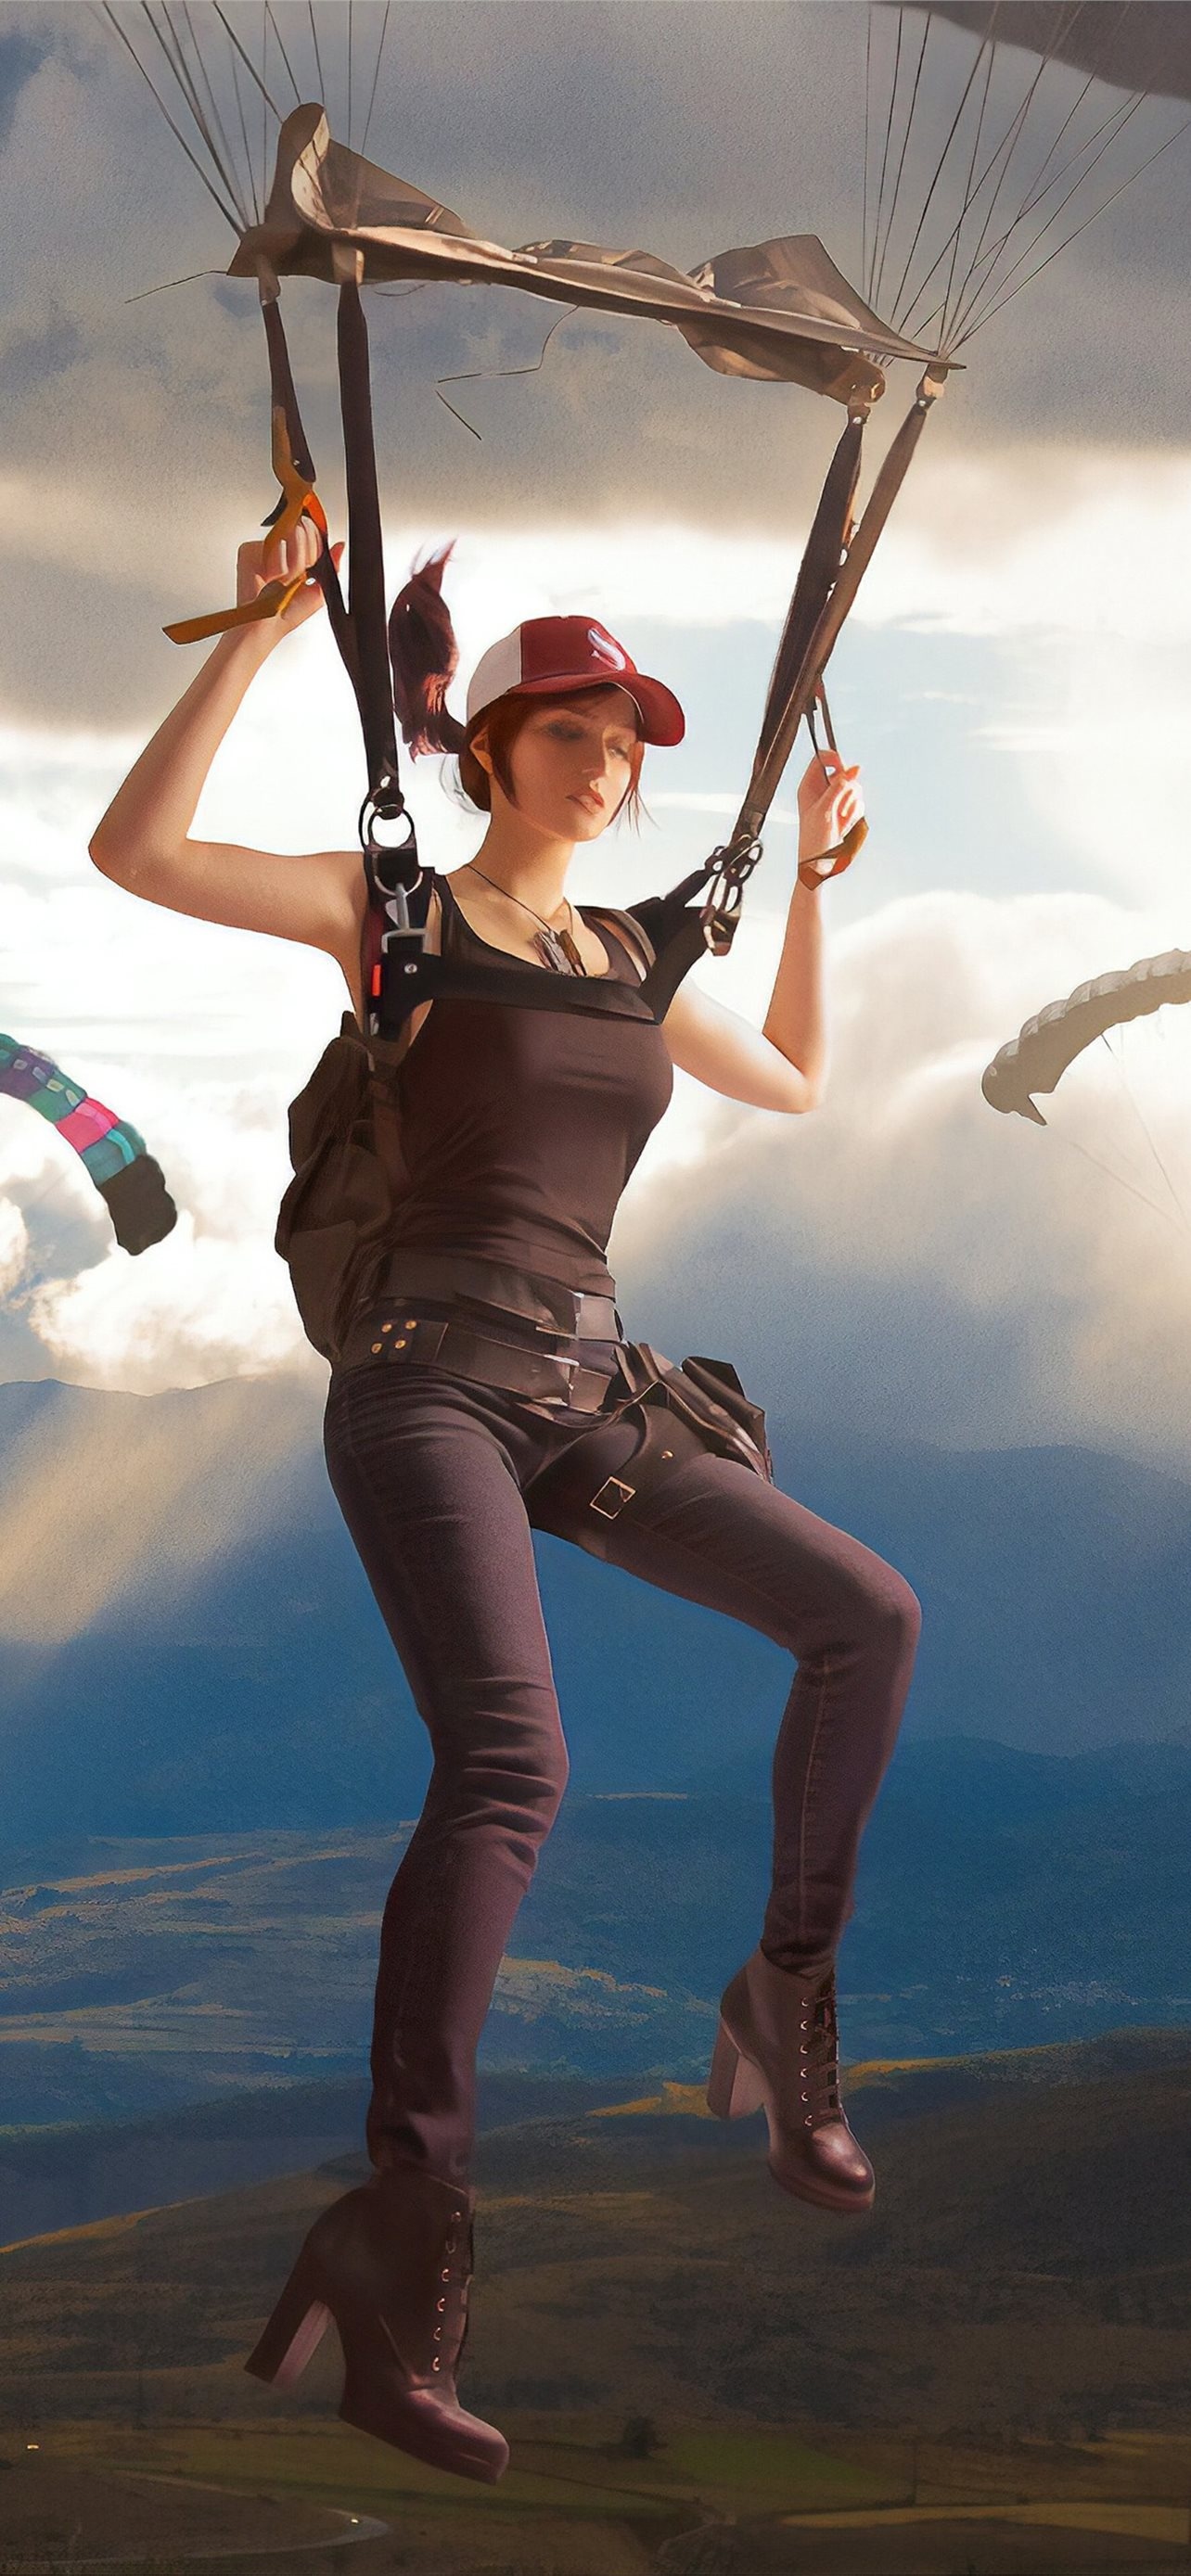 Parachuting: Moment of landing, PUBG: Battlegrounds video game fan art. 1290x2780 HD Background.